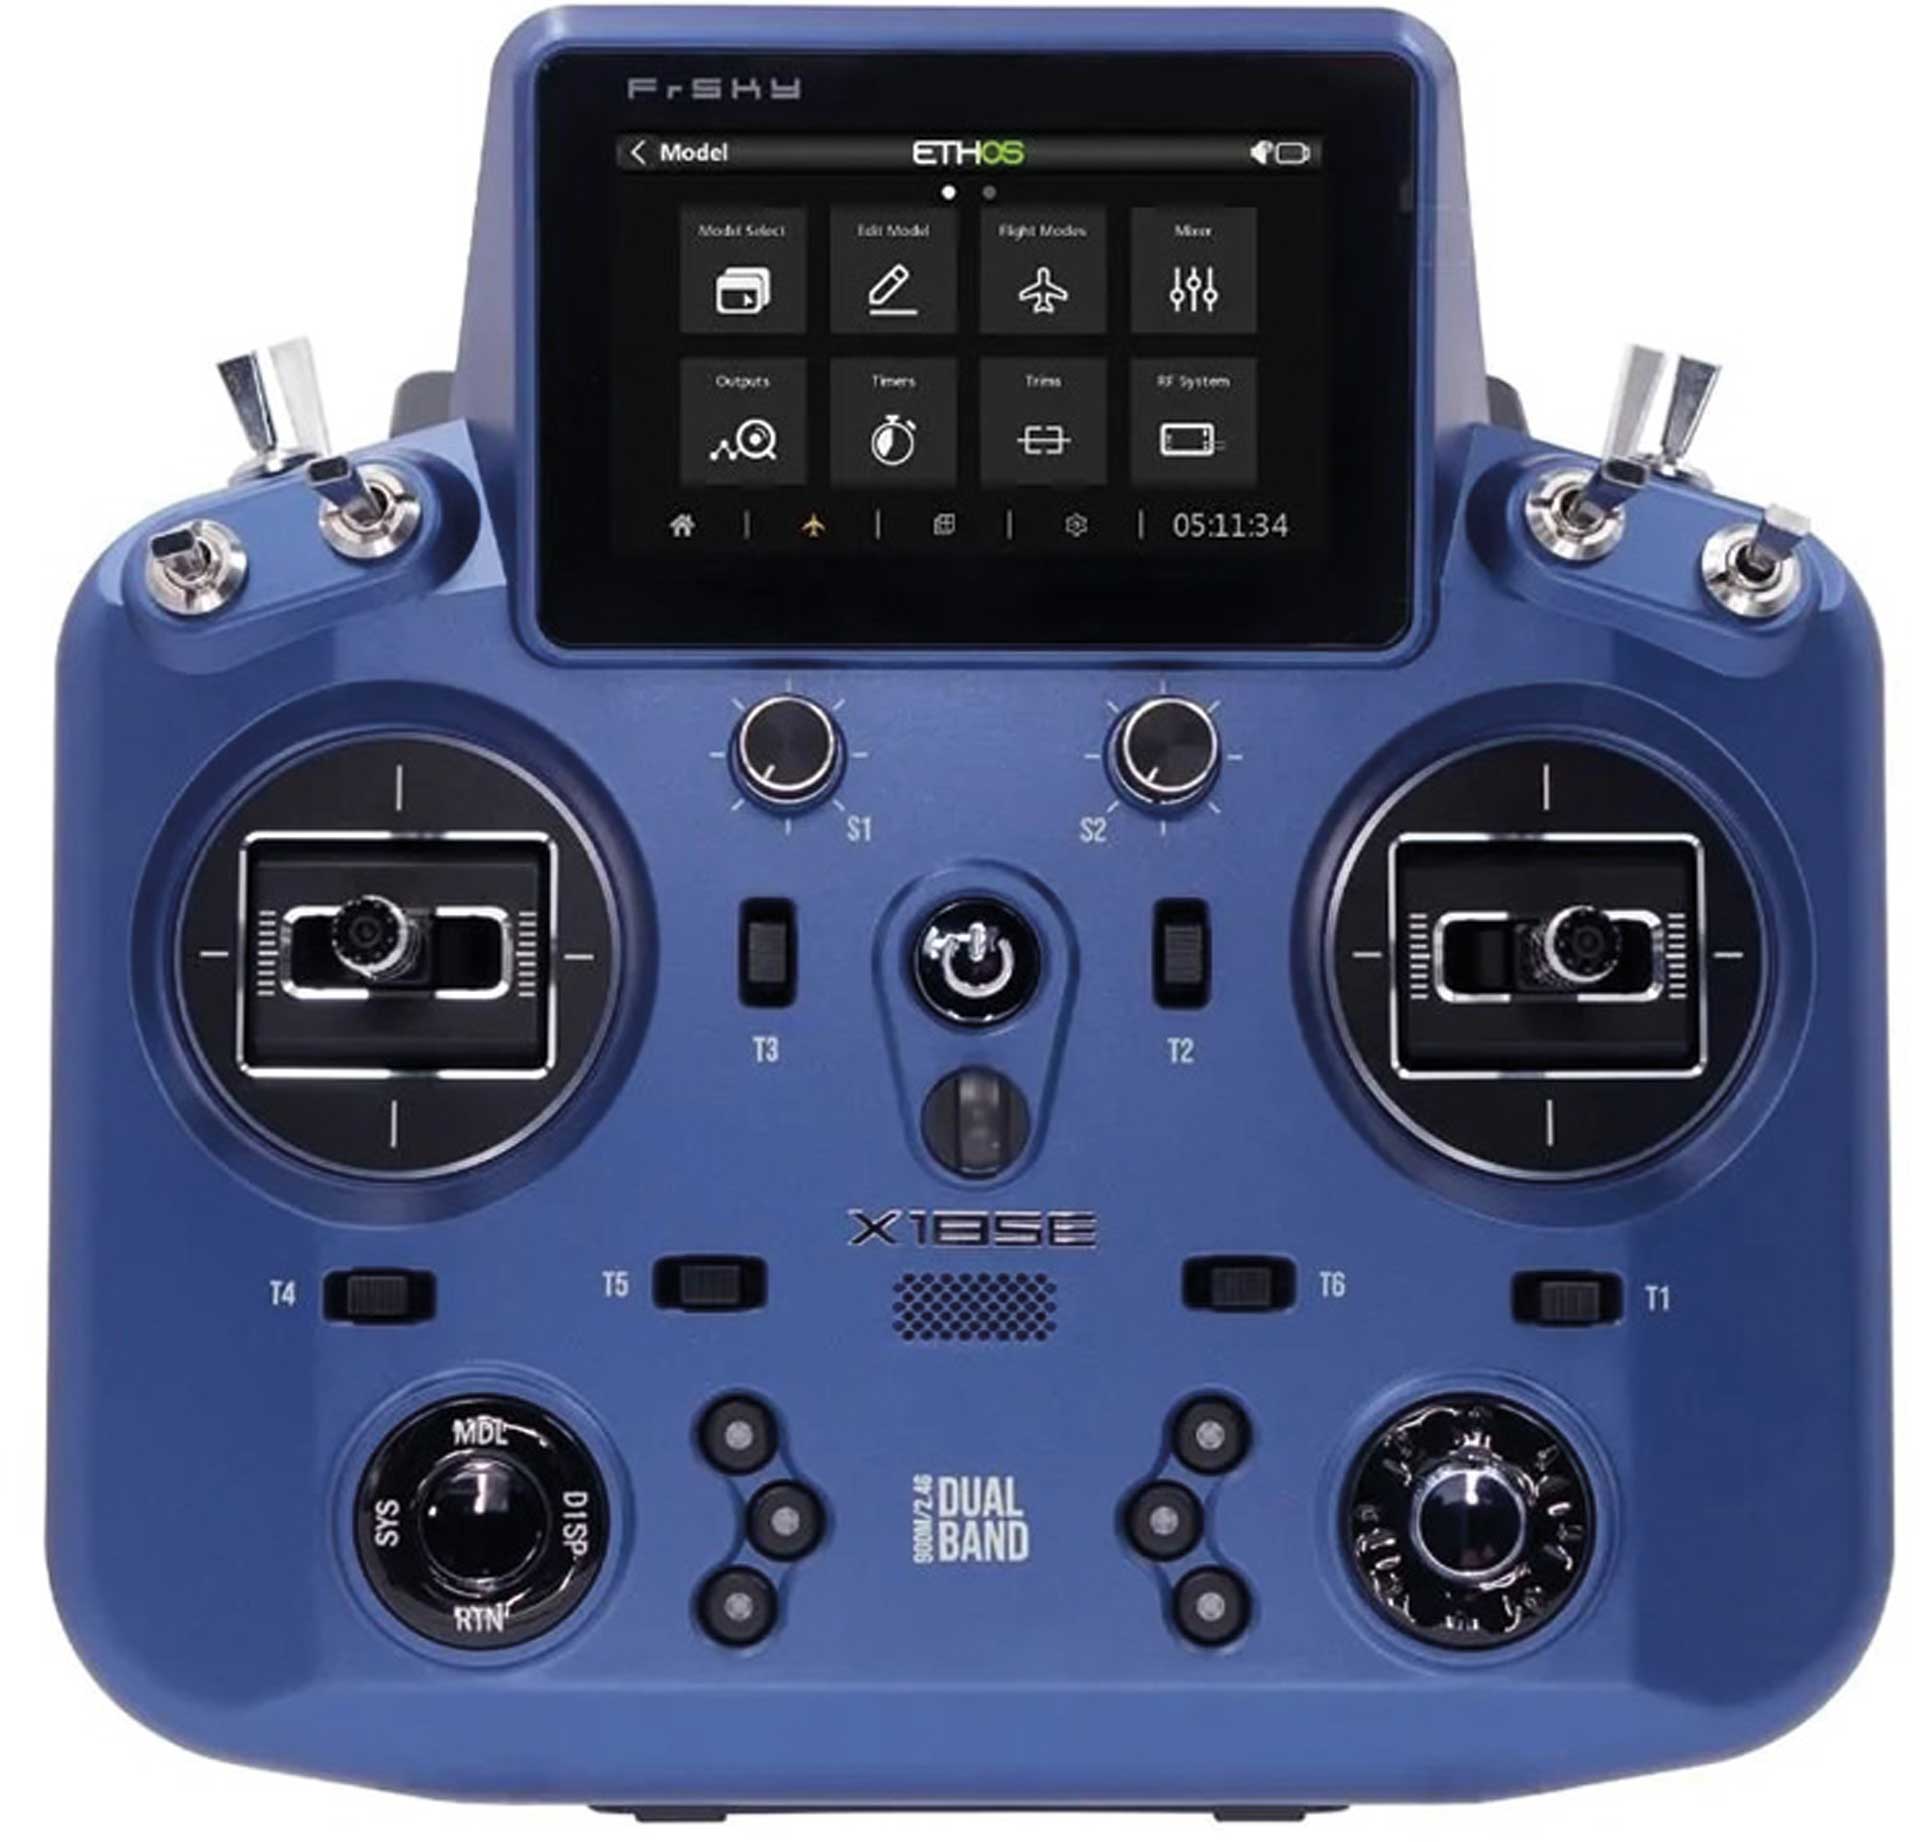 TANDEM X18SE EU/LBT FrSky Transmitter Set Blue 2.4Ghz battery, EVA bag, limited edition